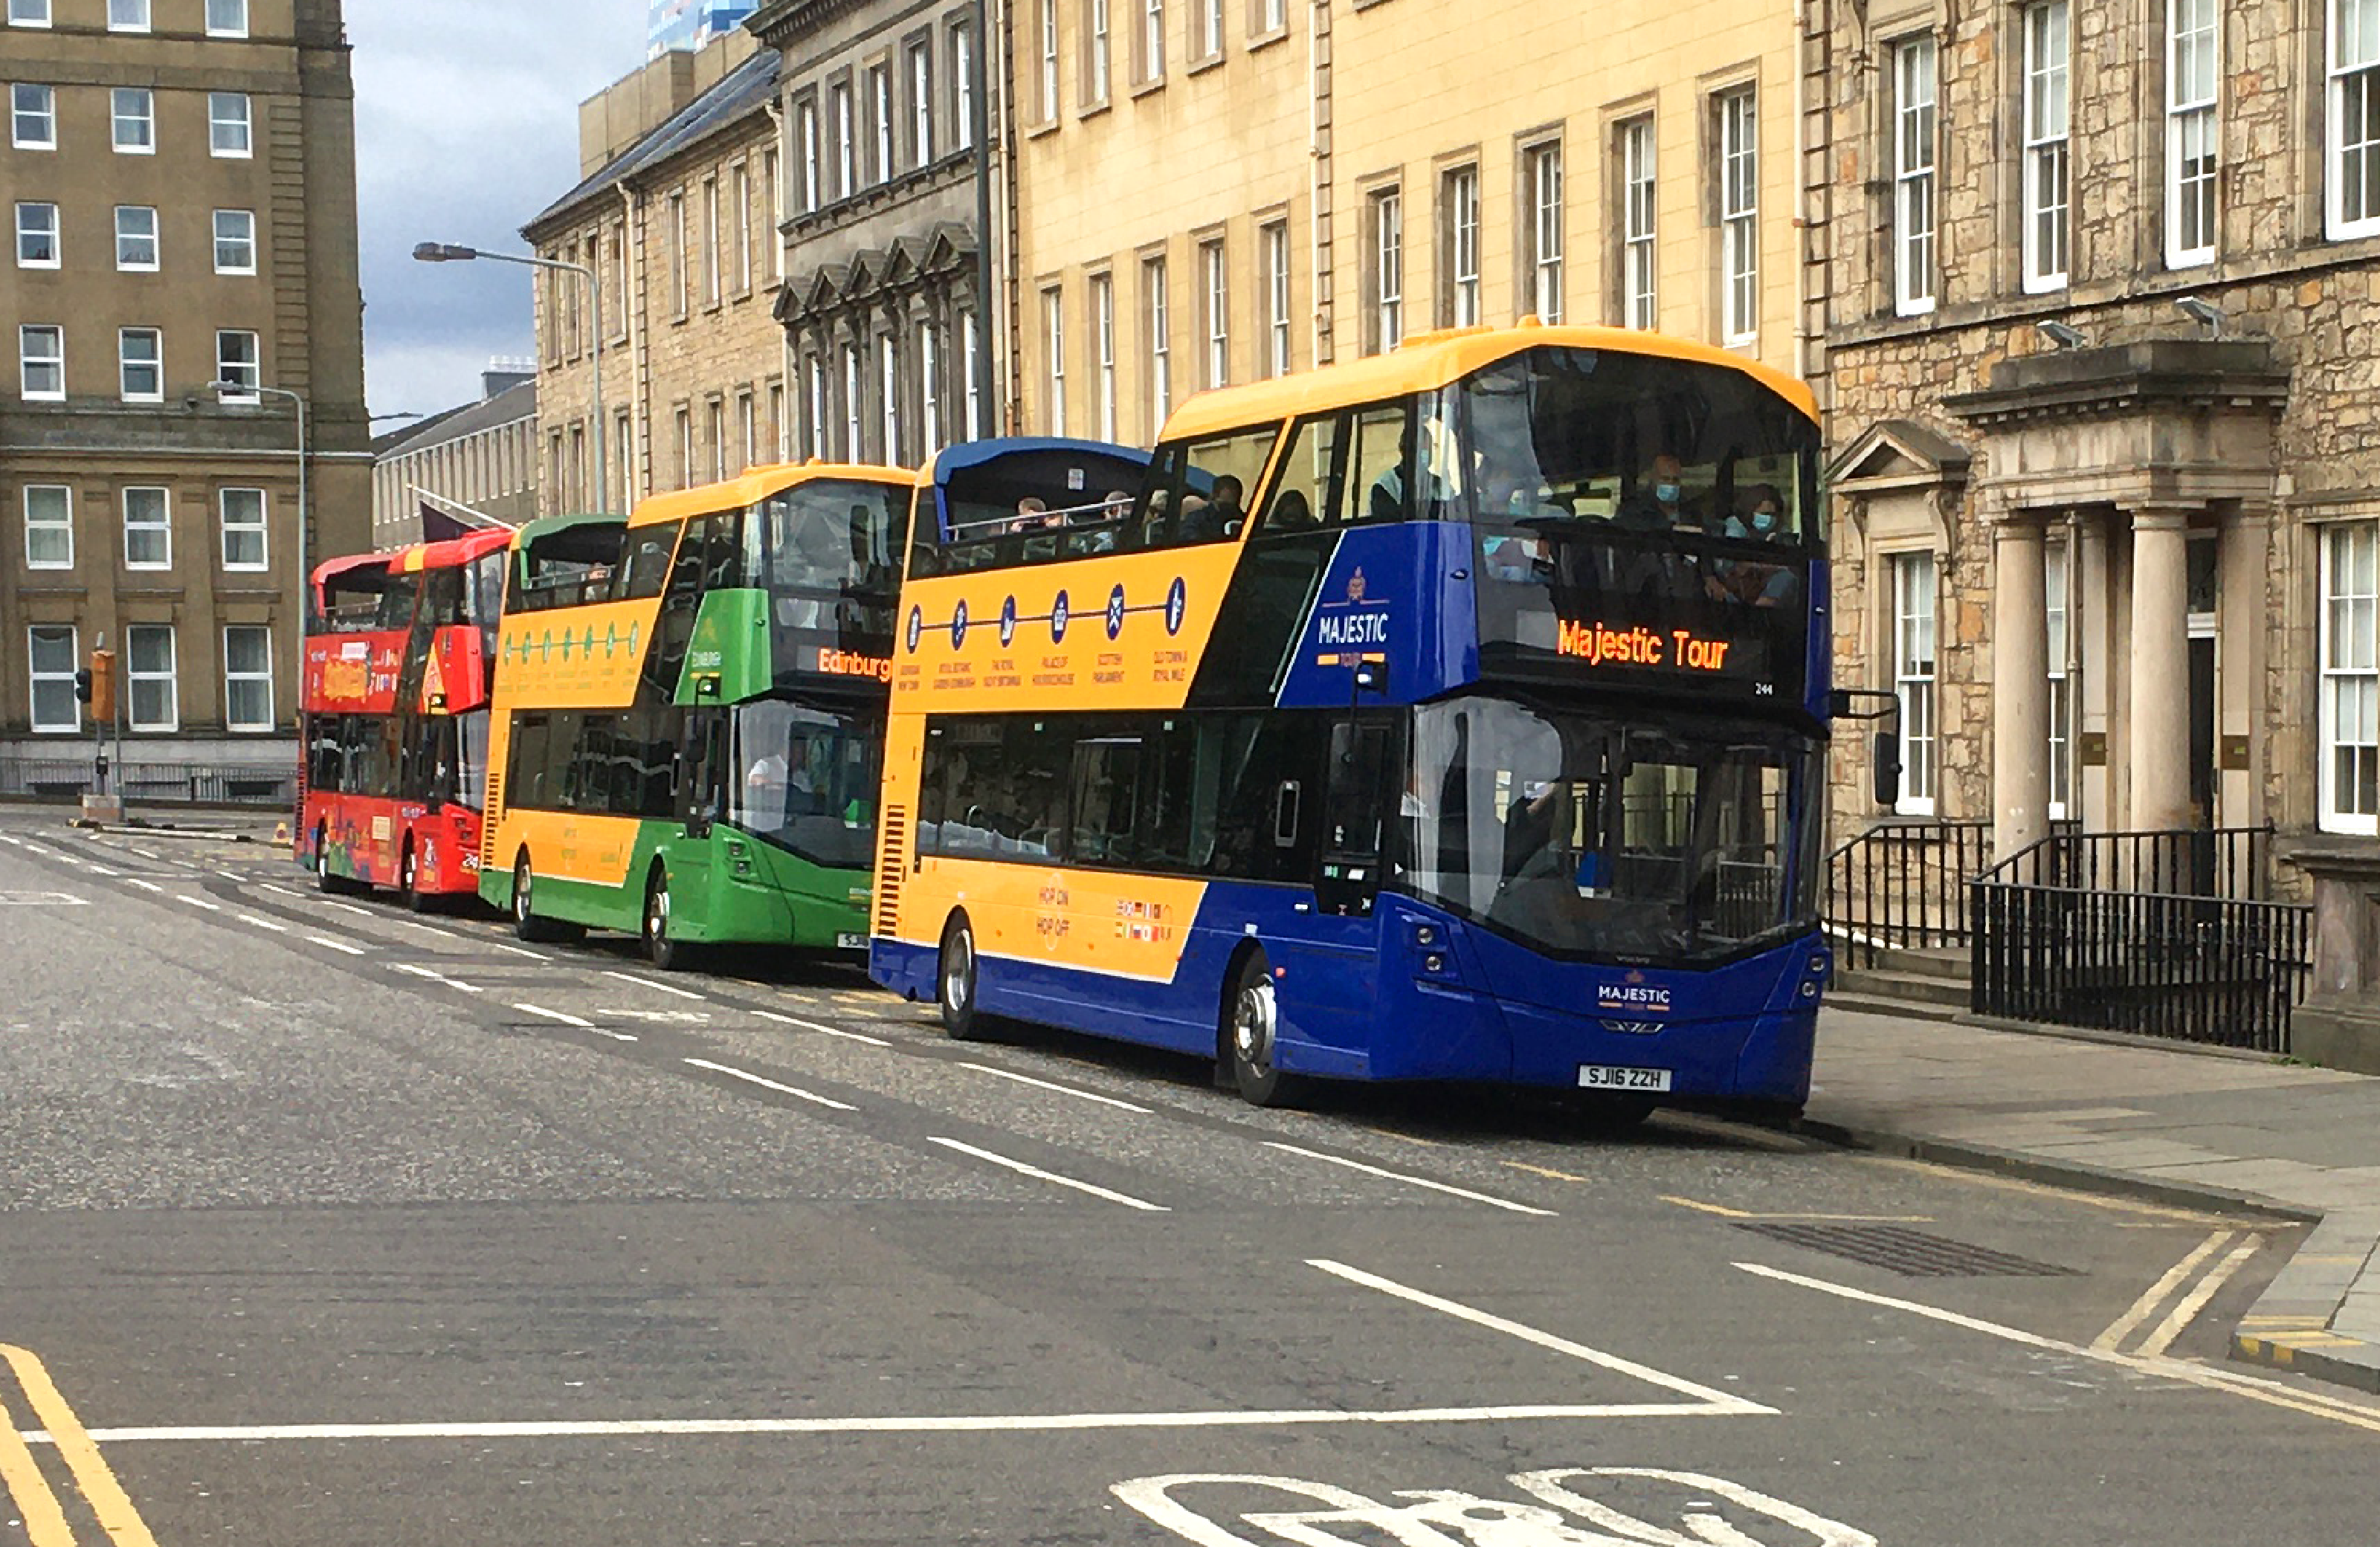 Edinburgh Tour Buses next to each other